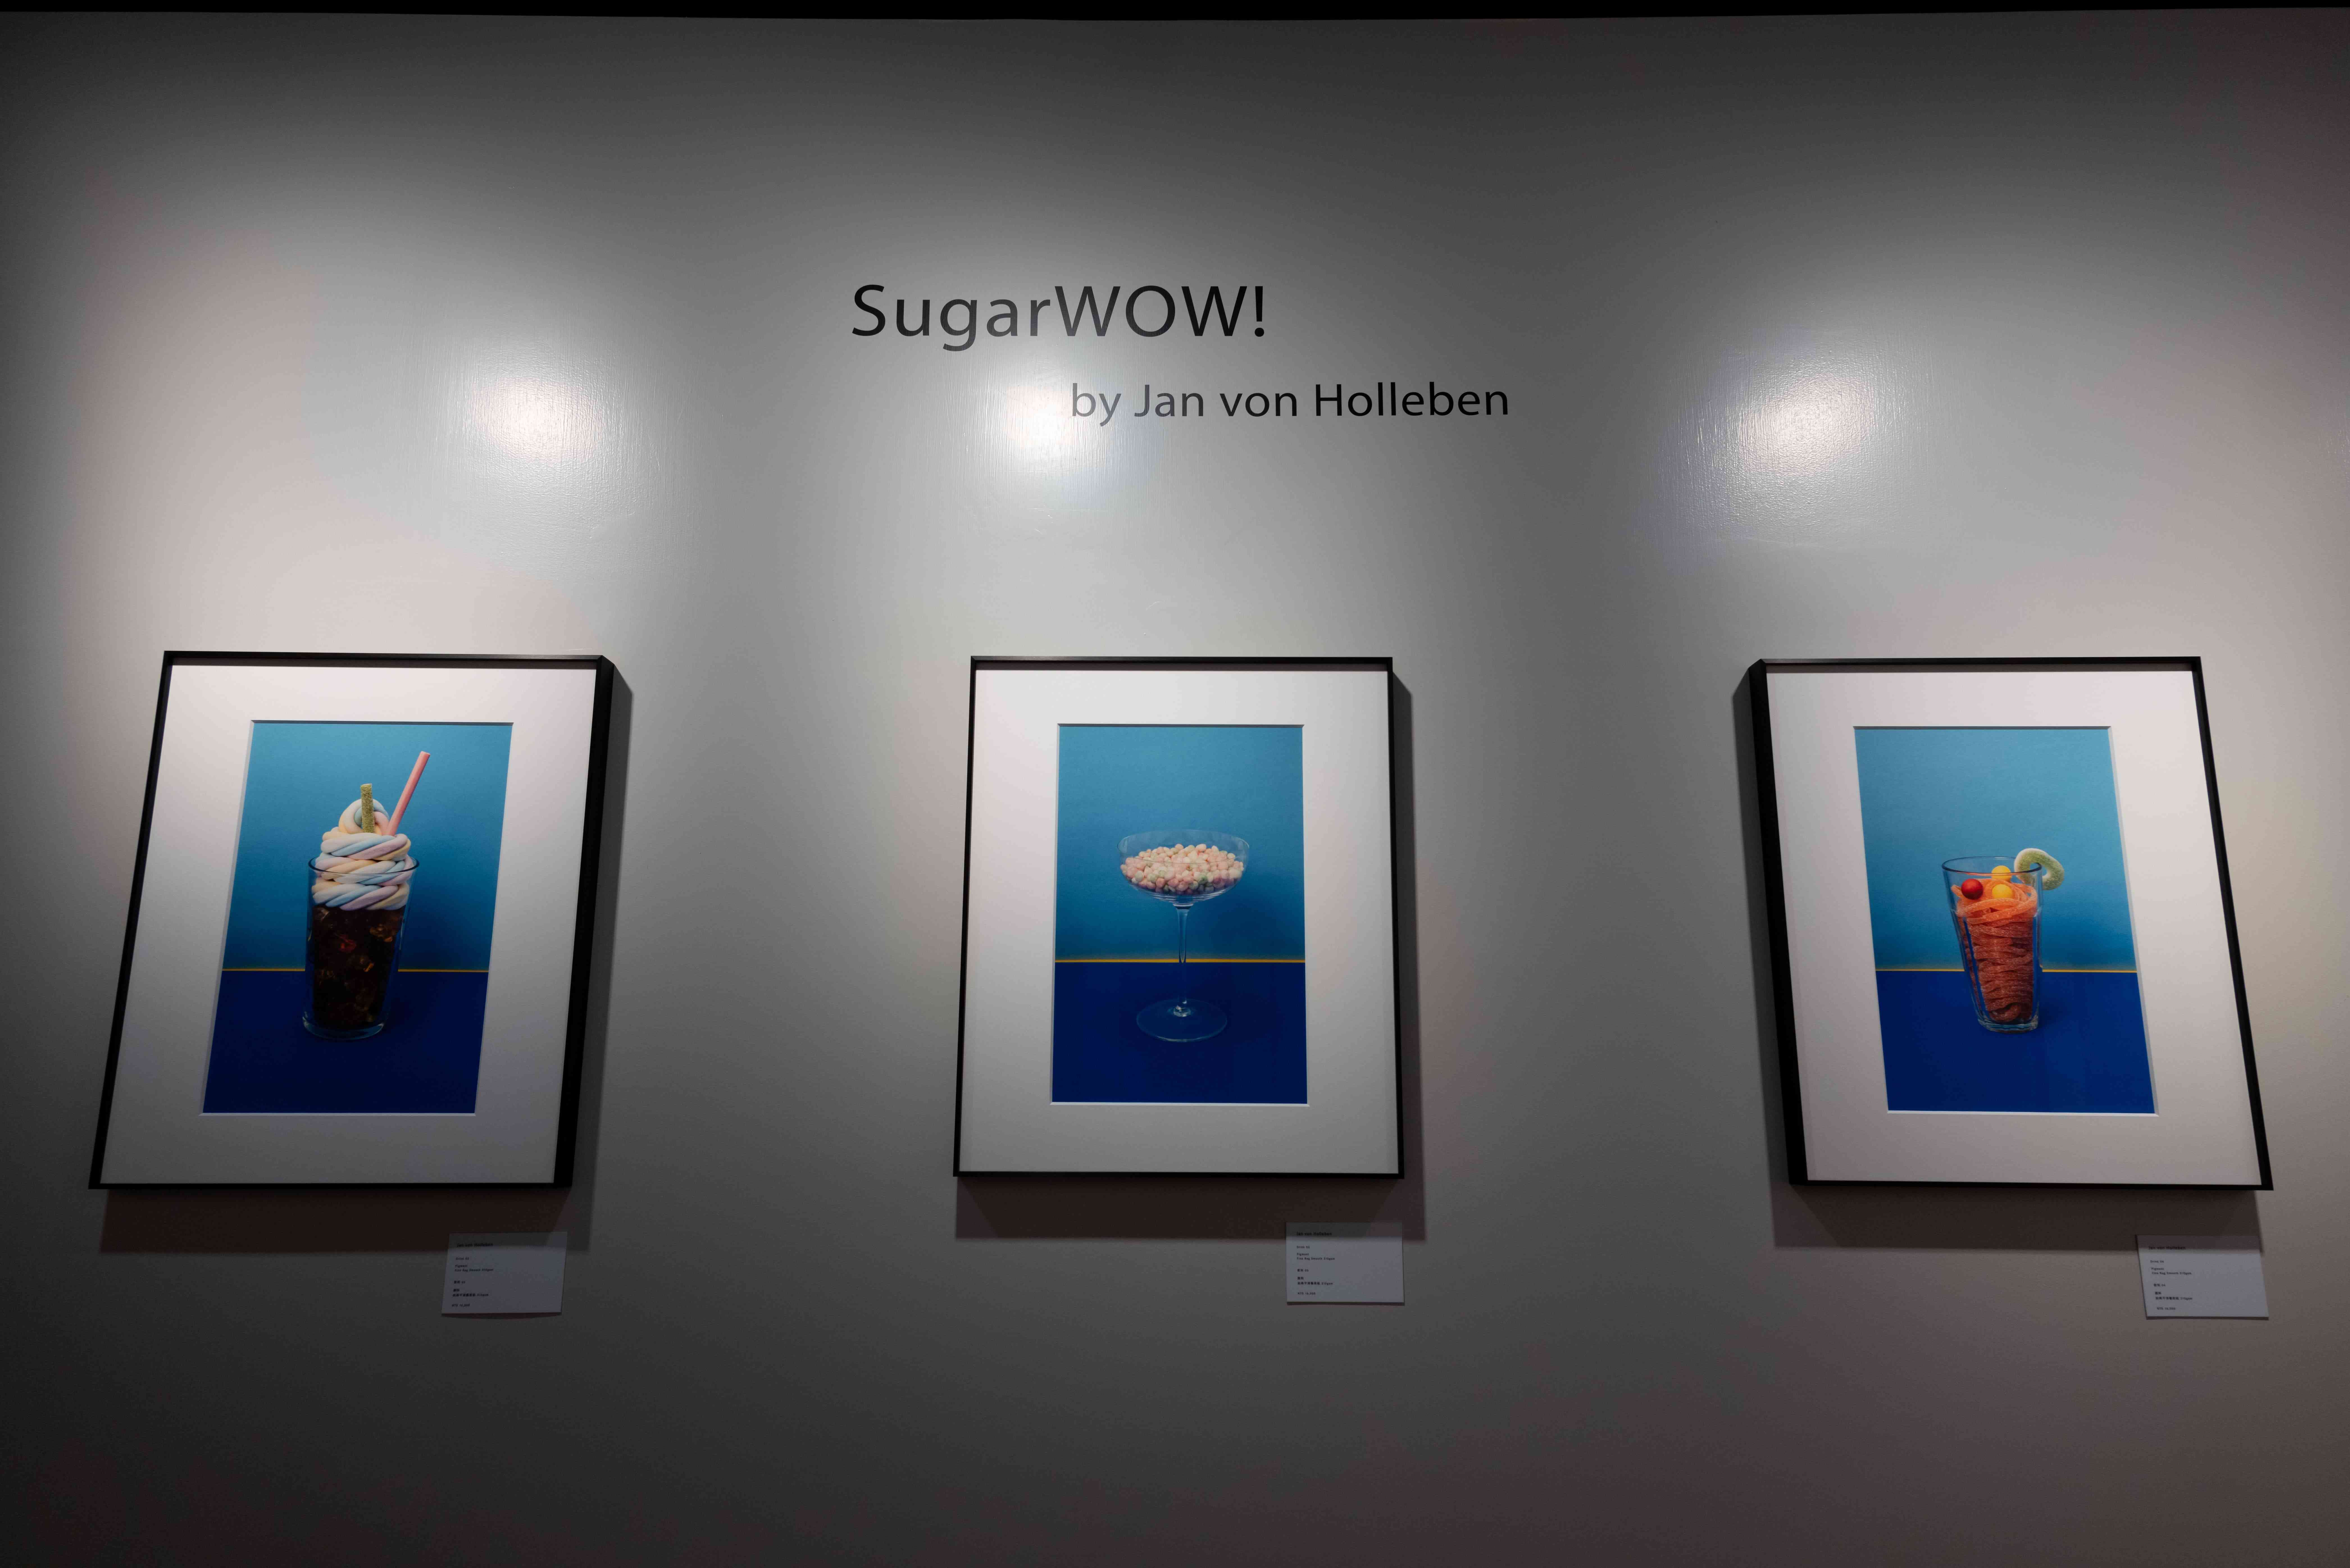 螞蟻人也不會 Sugar High的視覺誘惑Jan von Holleben 《SugarWOW！甜蜜狂想》攝影特展